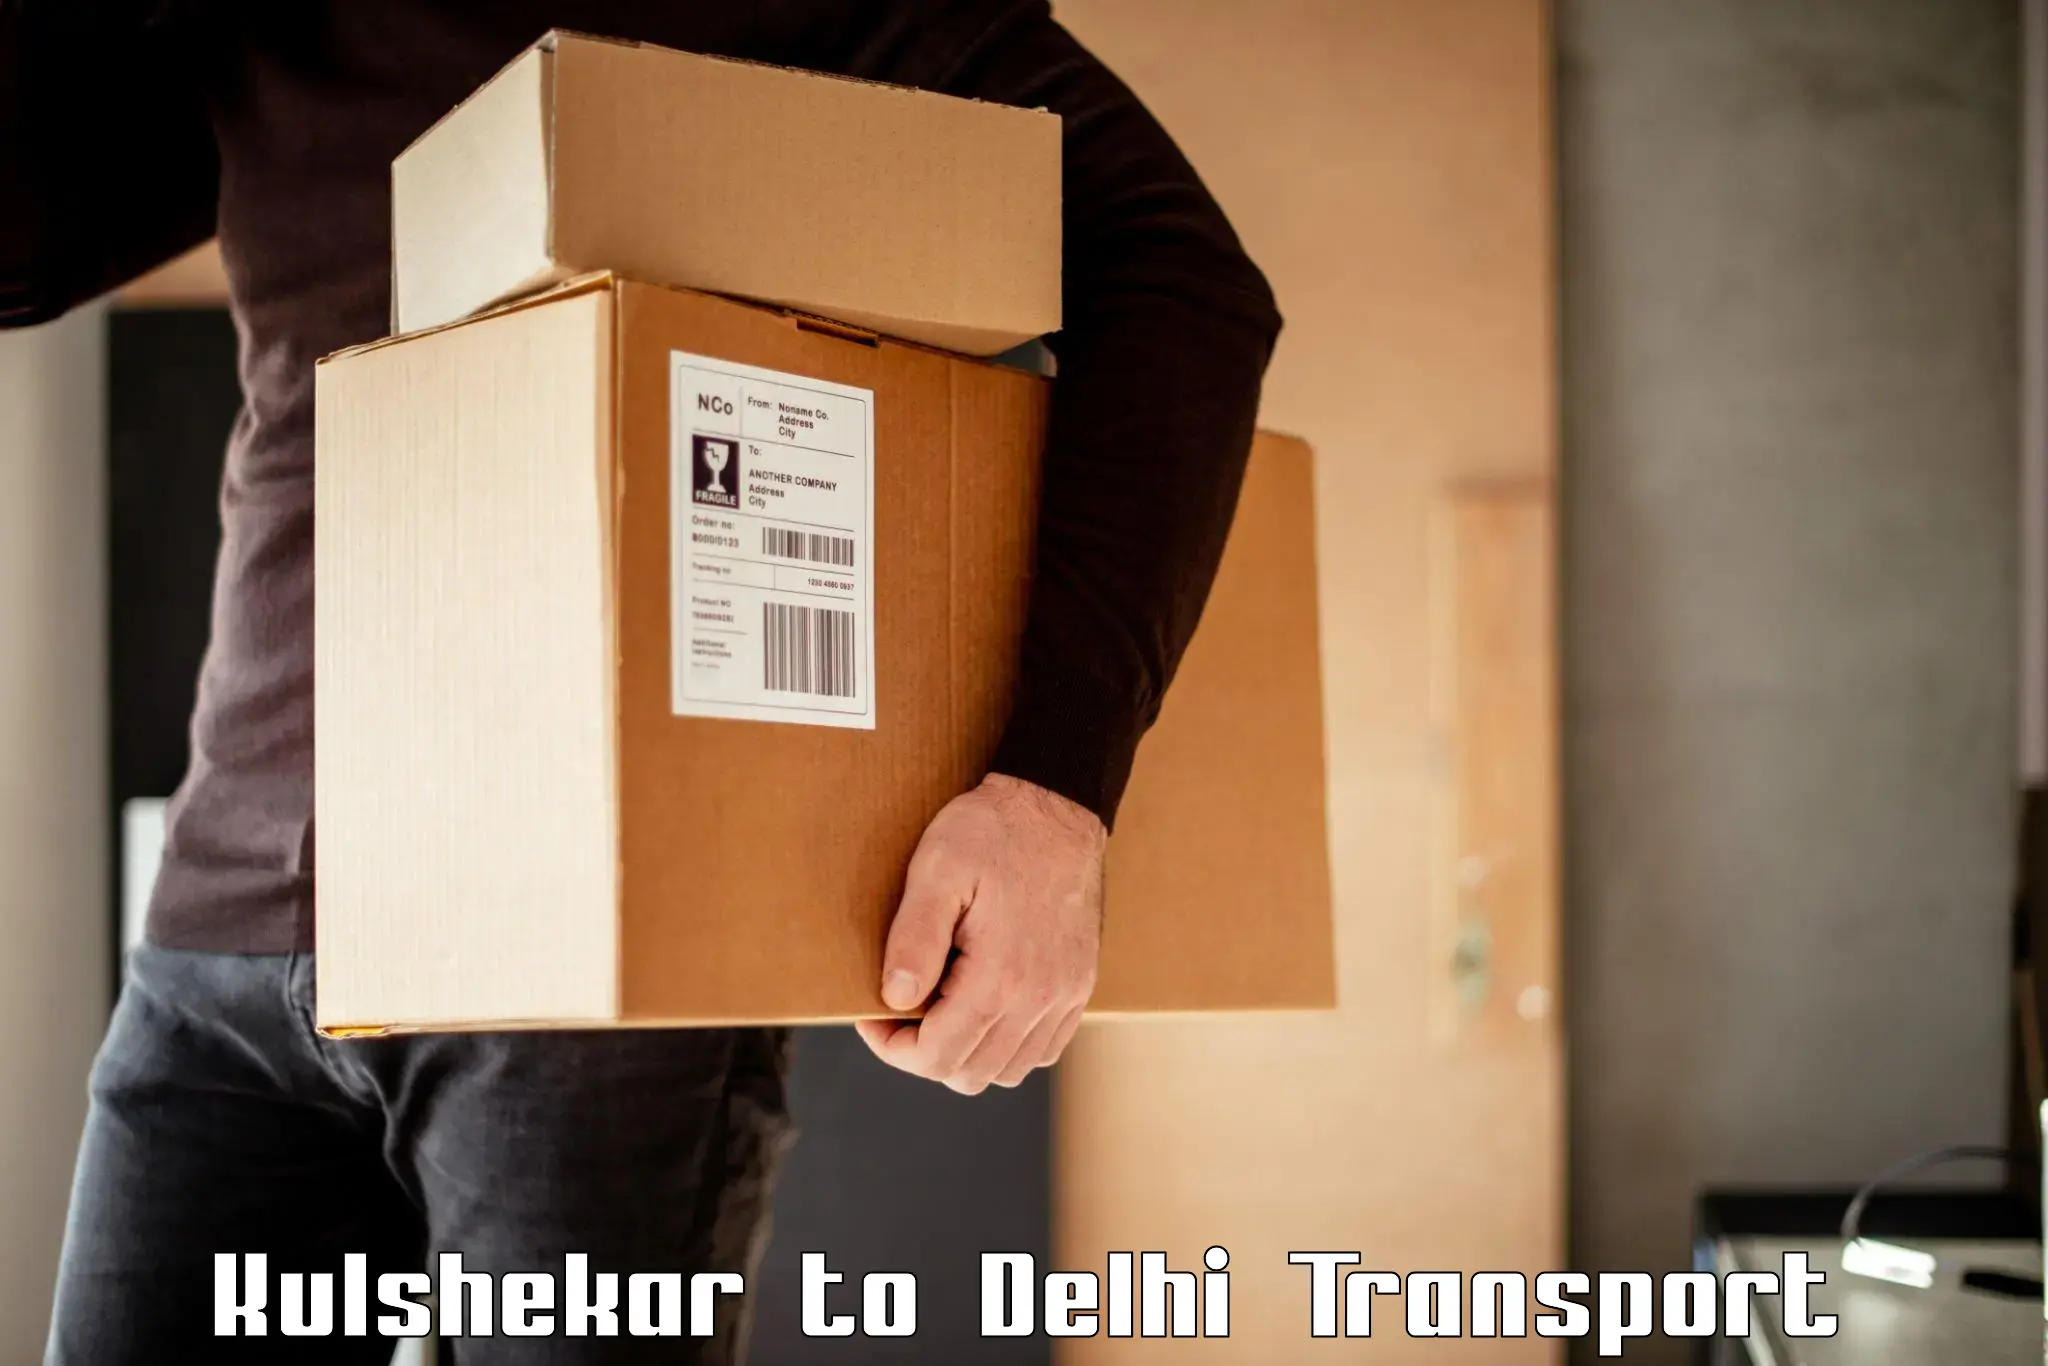 Road transport online services Kulshekar to Ashok Vihar